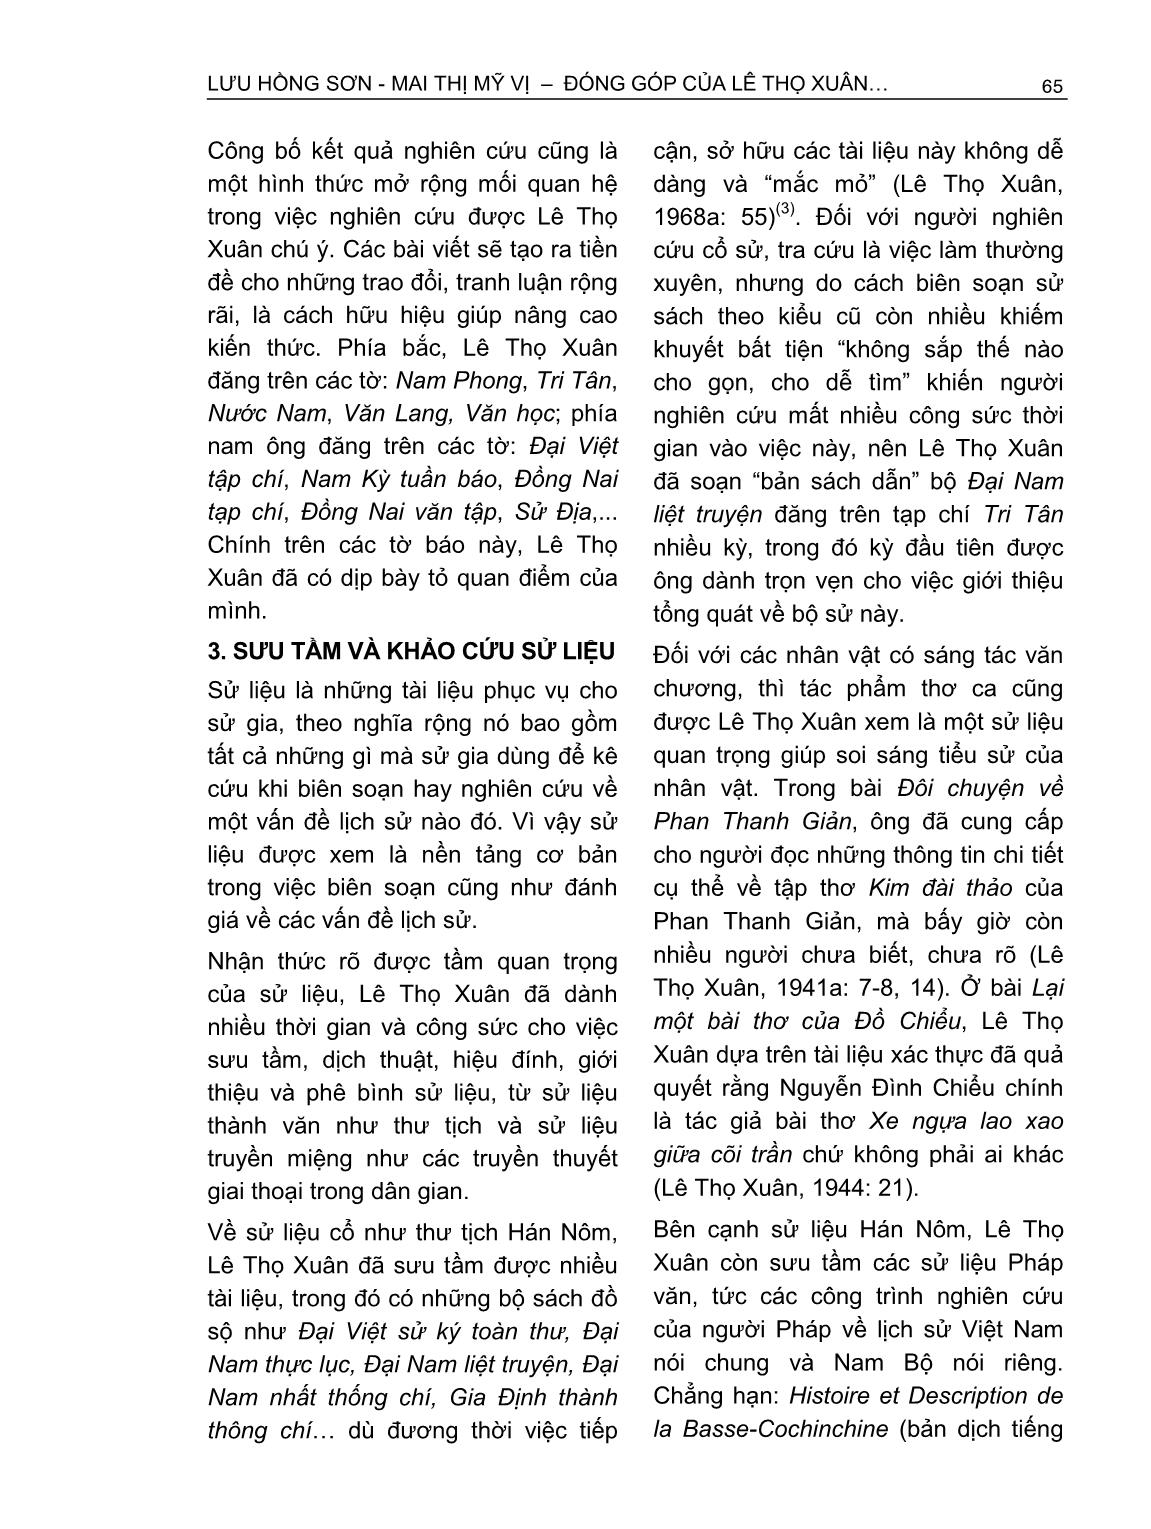 Đóng góp của Lê Thọ Xuân trong nghiên cứu lịch sử Nam Bộ triều Nguyễn thế kỷ XIX trang 6